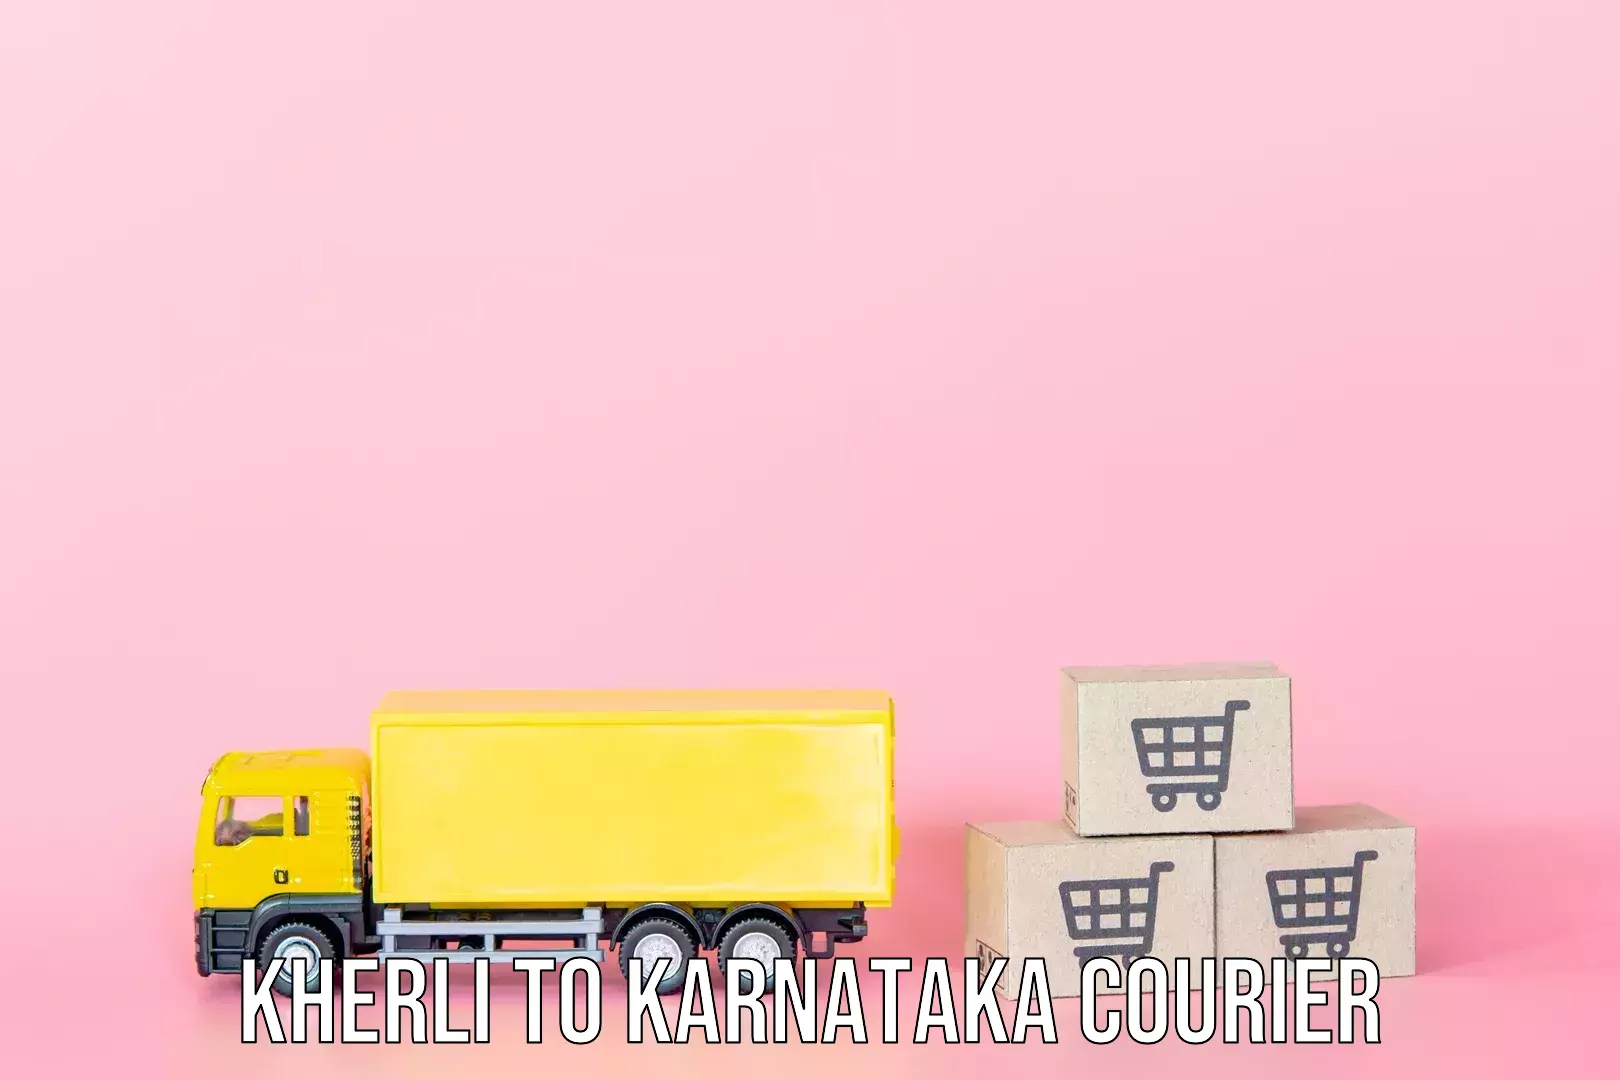 Baggage delivery technology Kherli to Karnataka